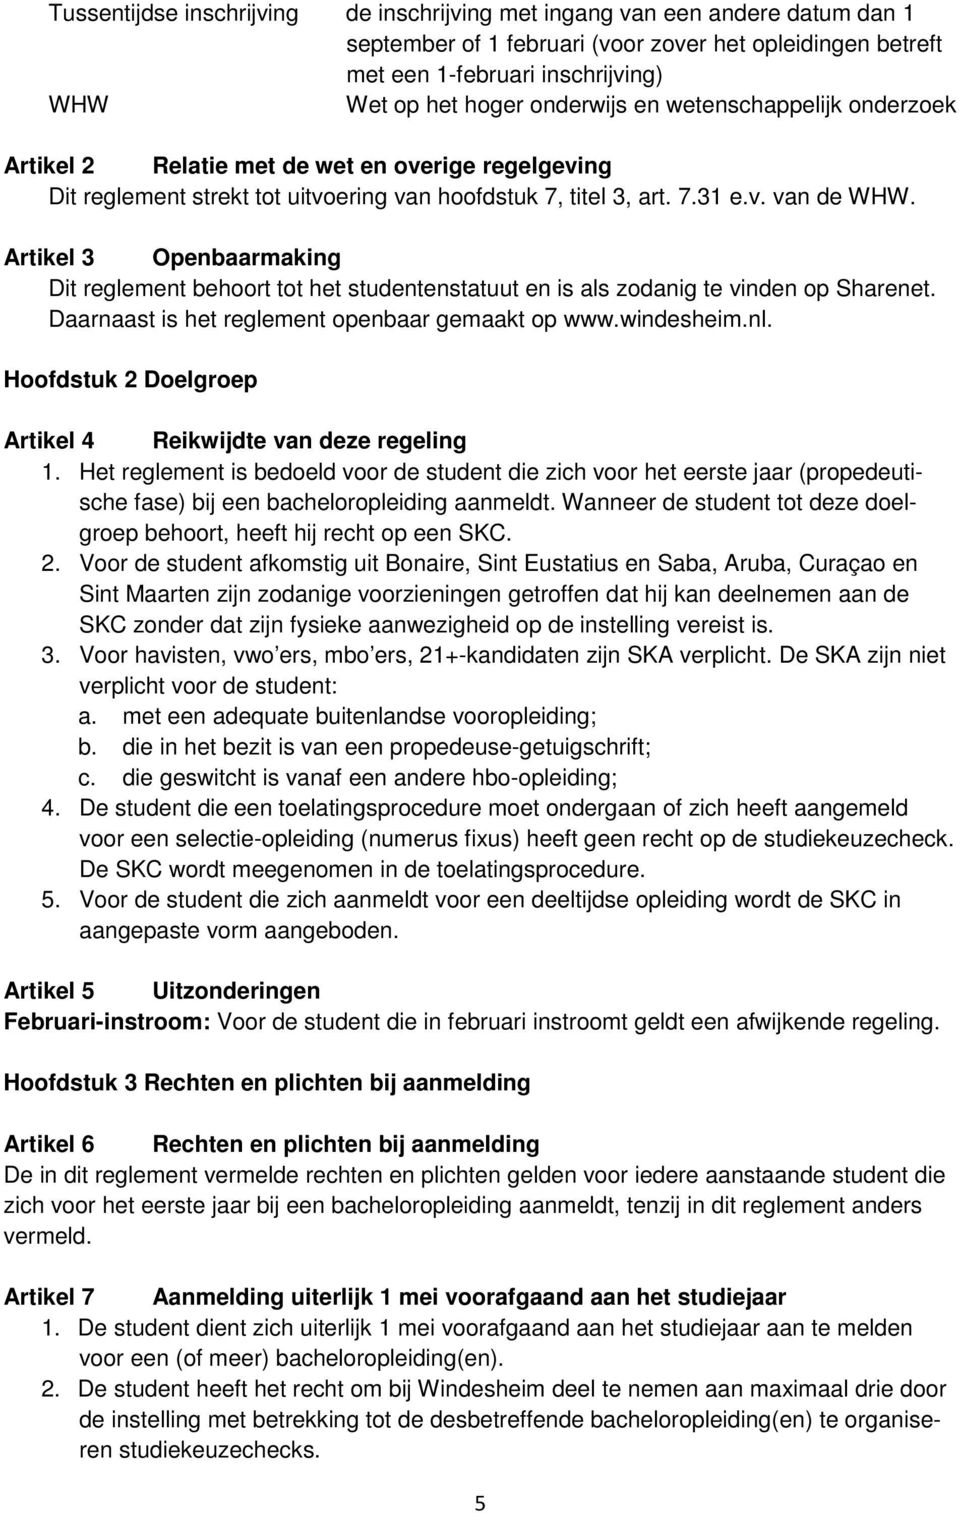 Artikel 3 Openbaarmaking Dit reglement behoort tot het studentenstatuut en is als zodanig te vinden op Sharenet. Daarnaast is het reglement openbaar gemaakt op www.windesheim.nl.